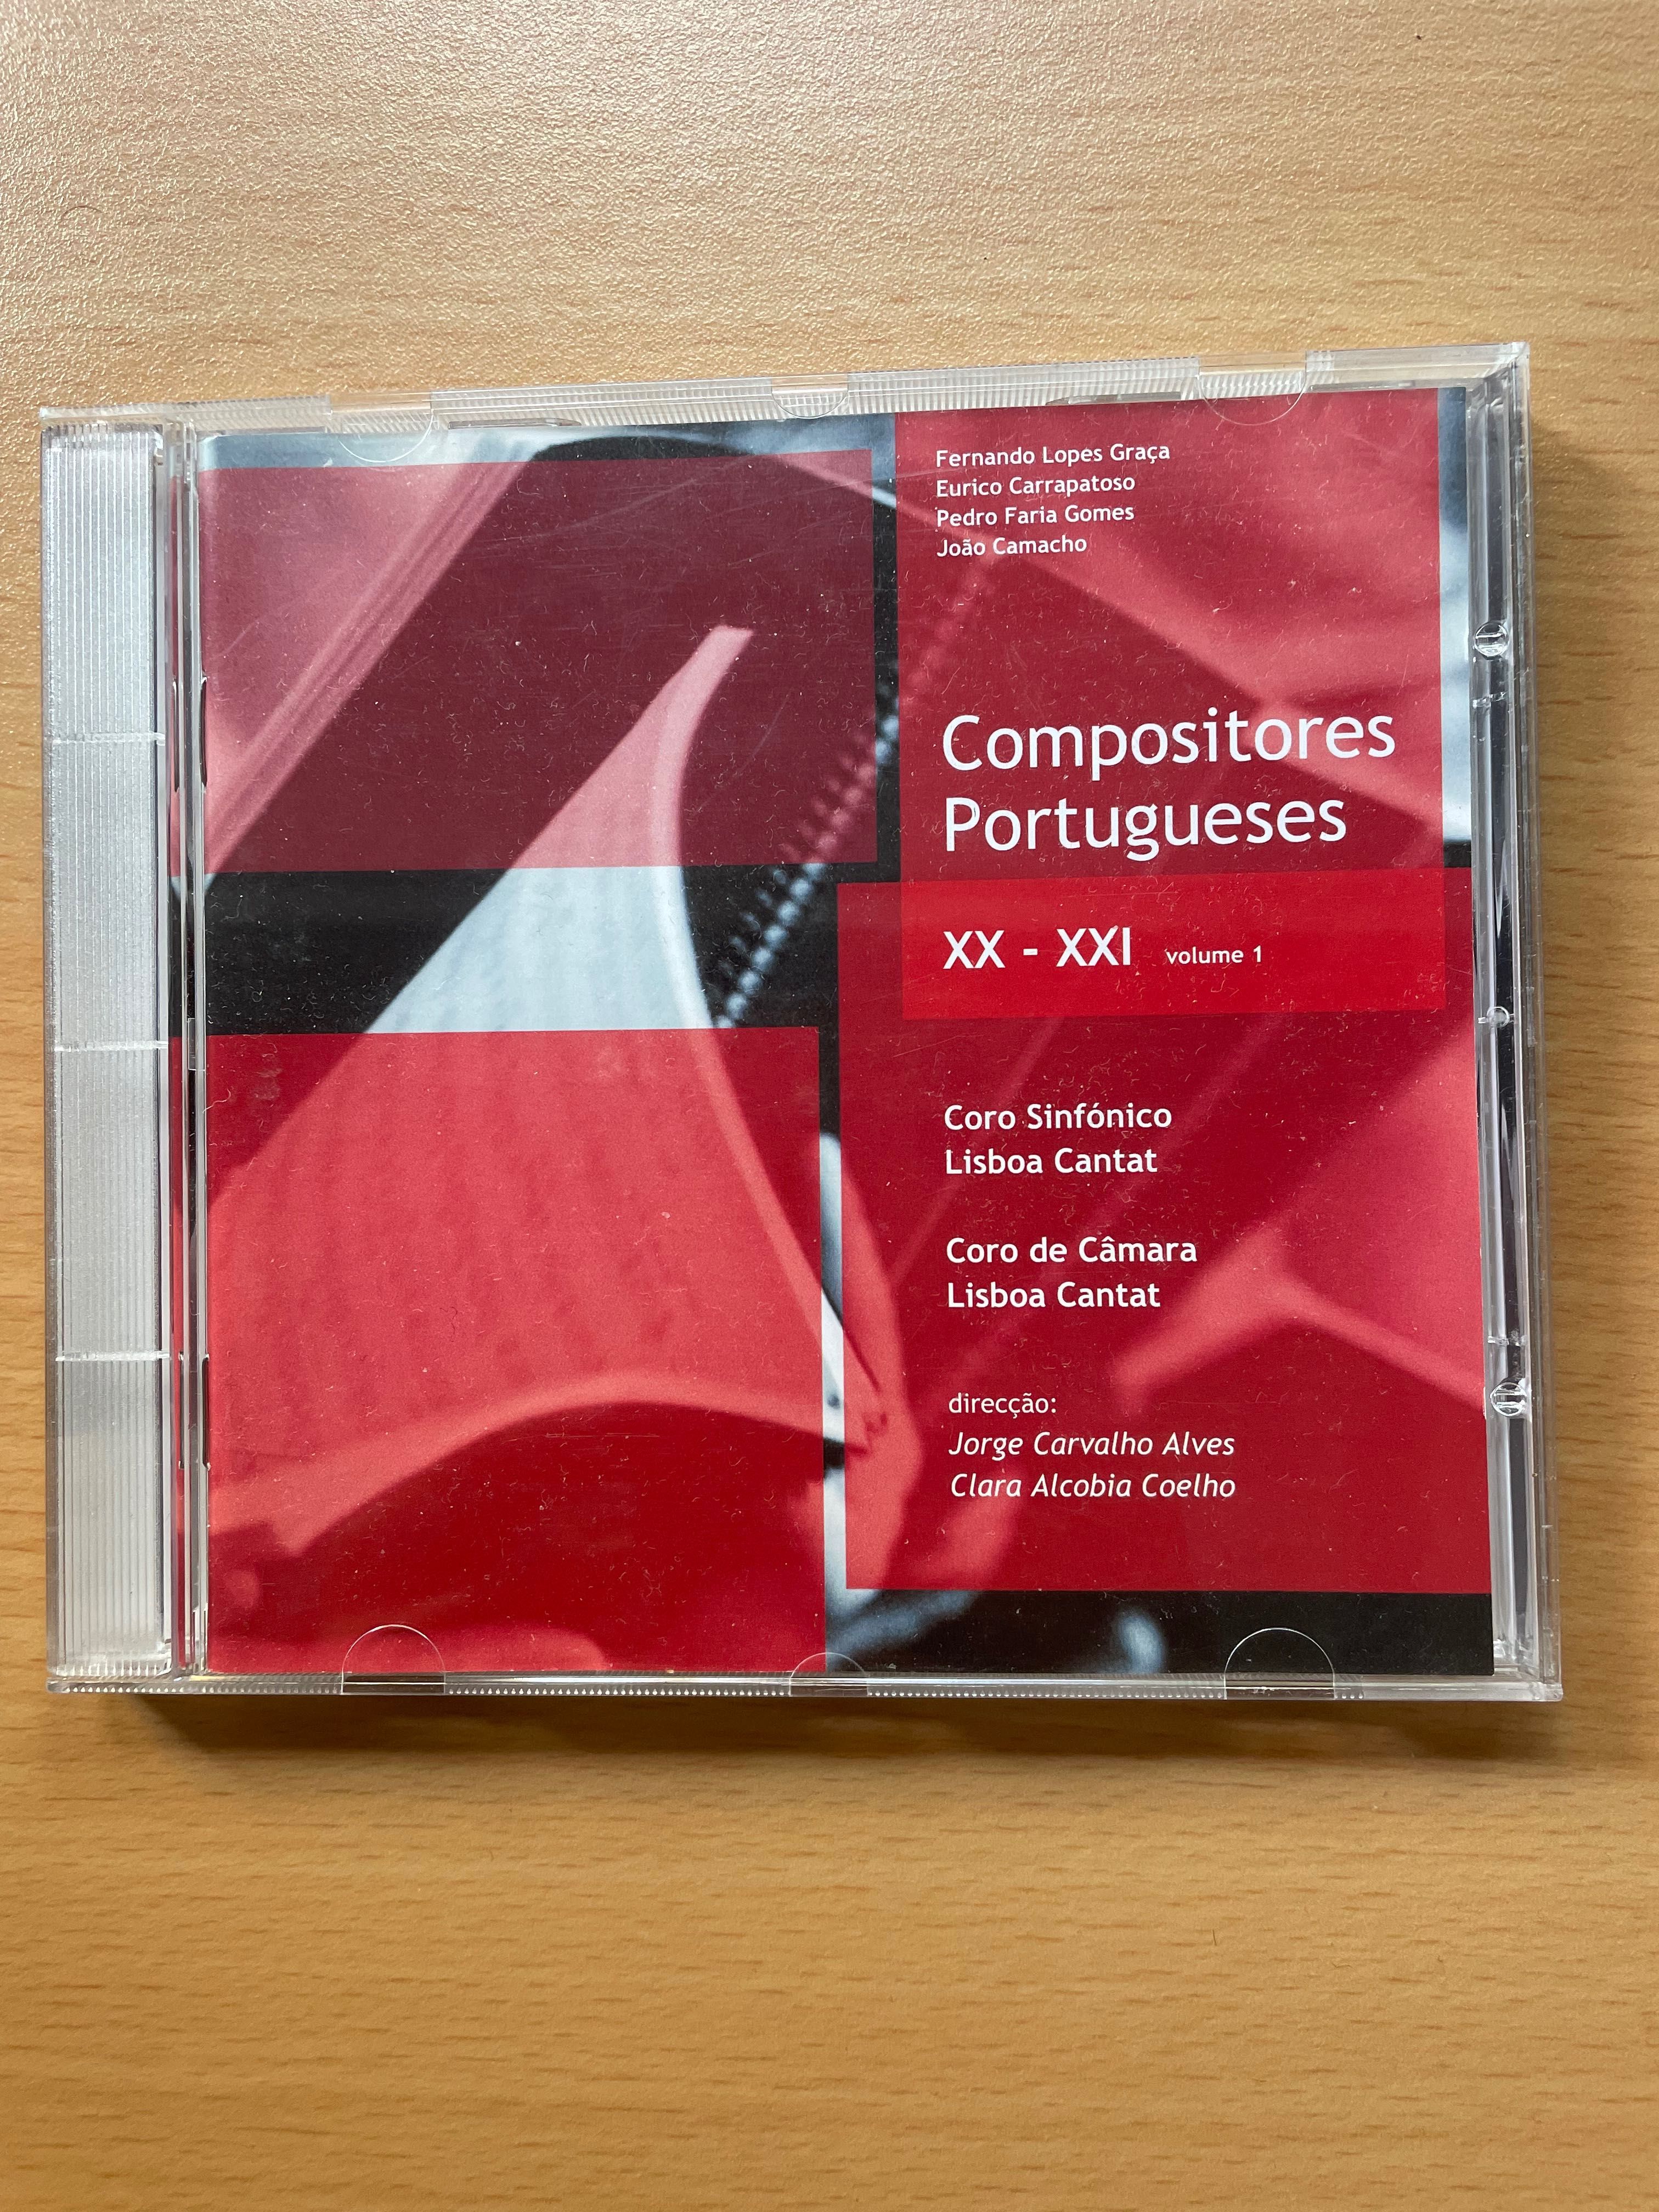 CD Compositores portugueses XX/XXI VOL. 1